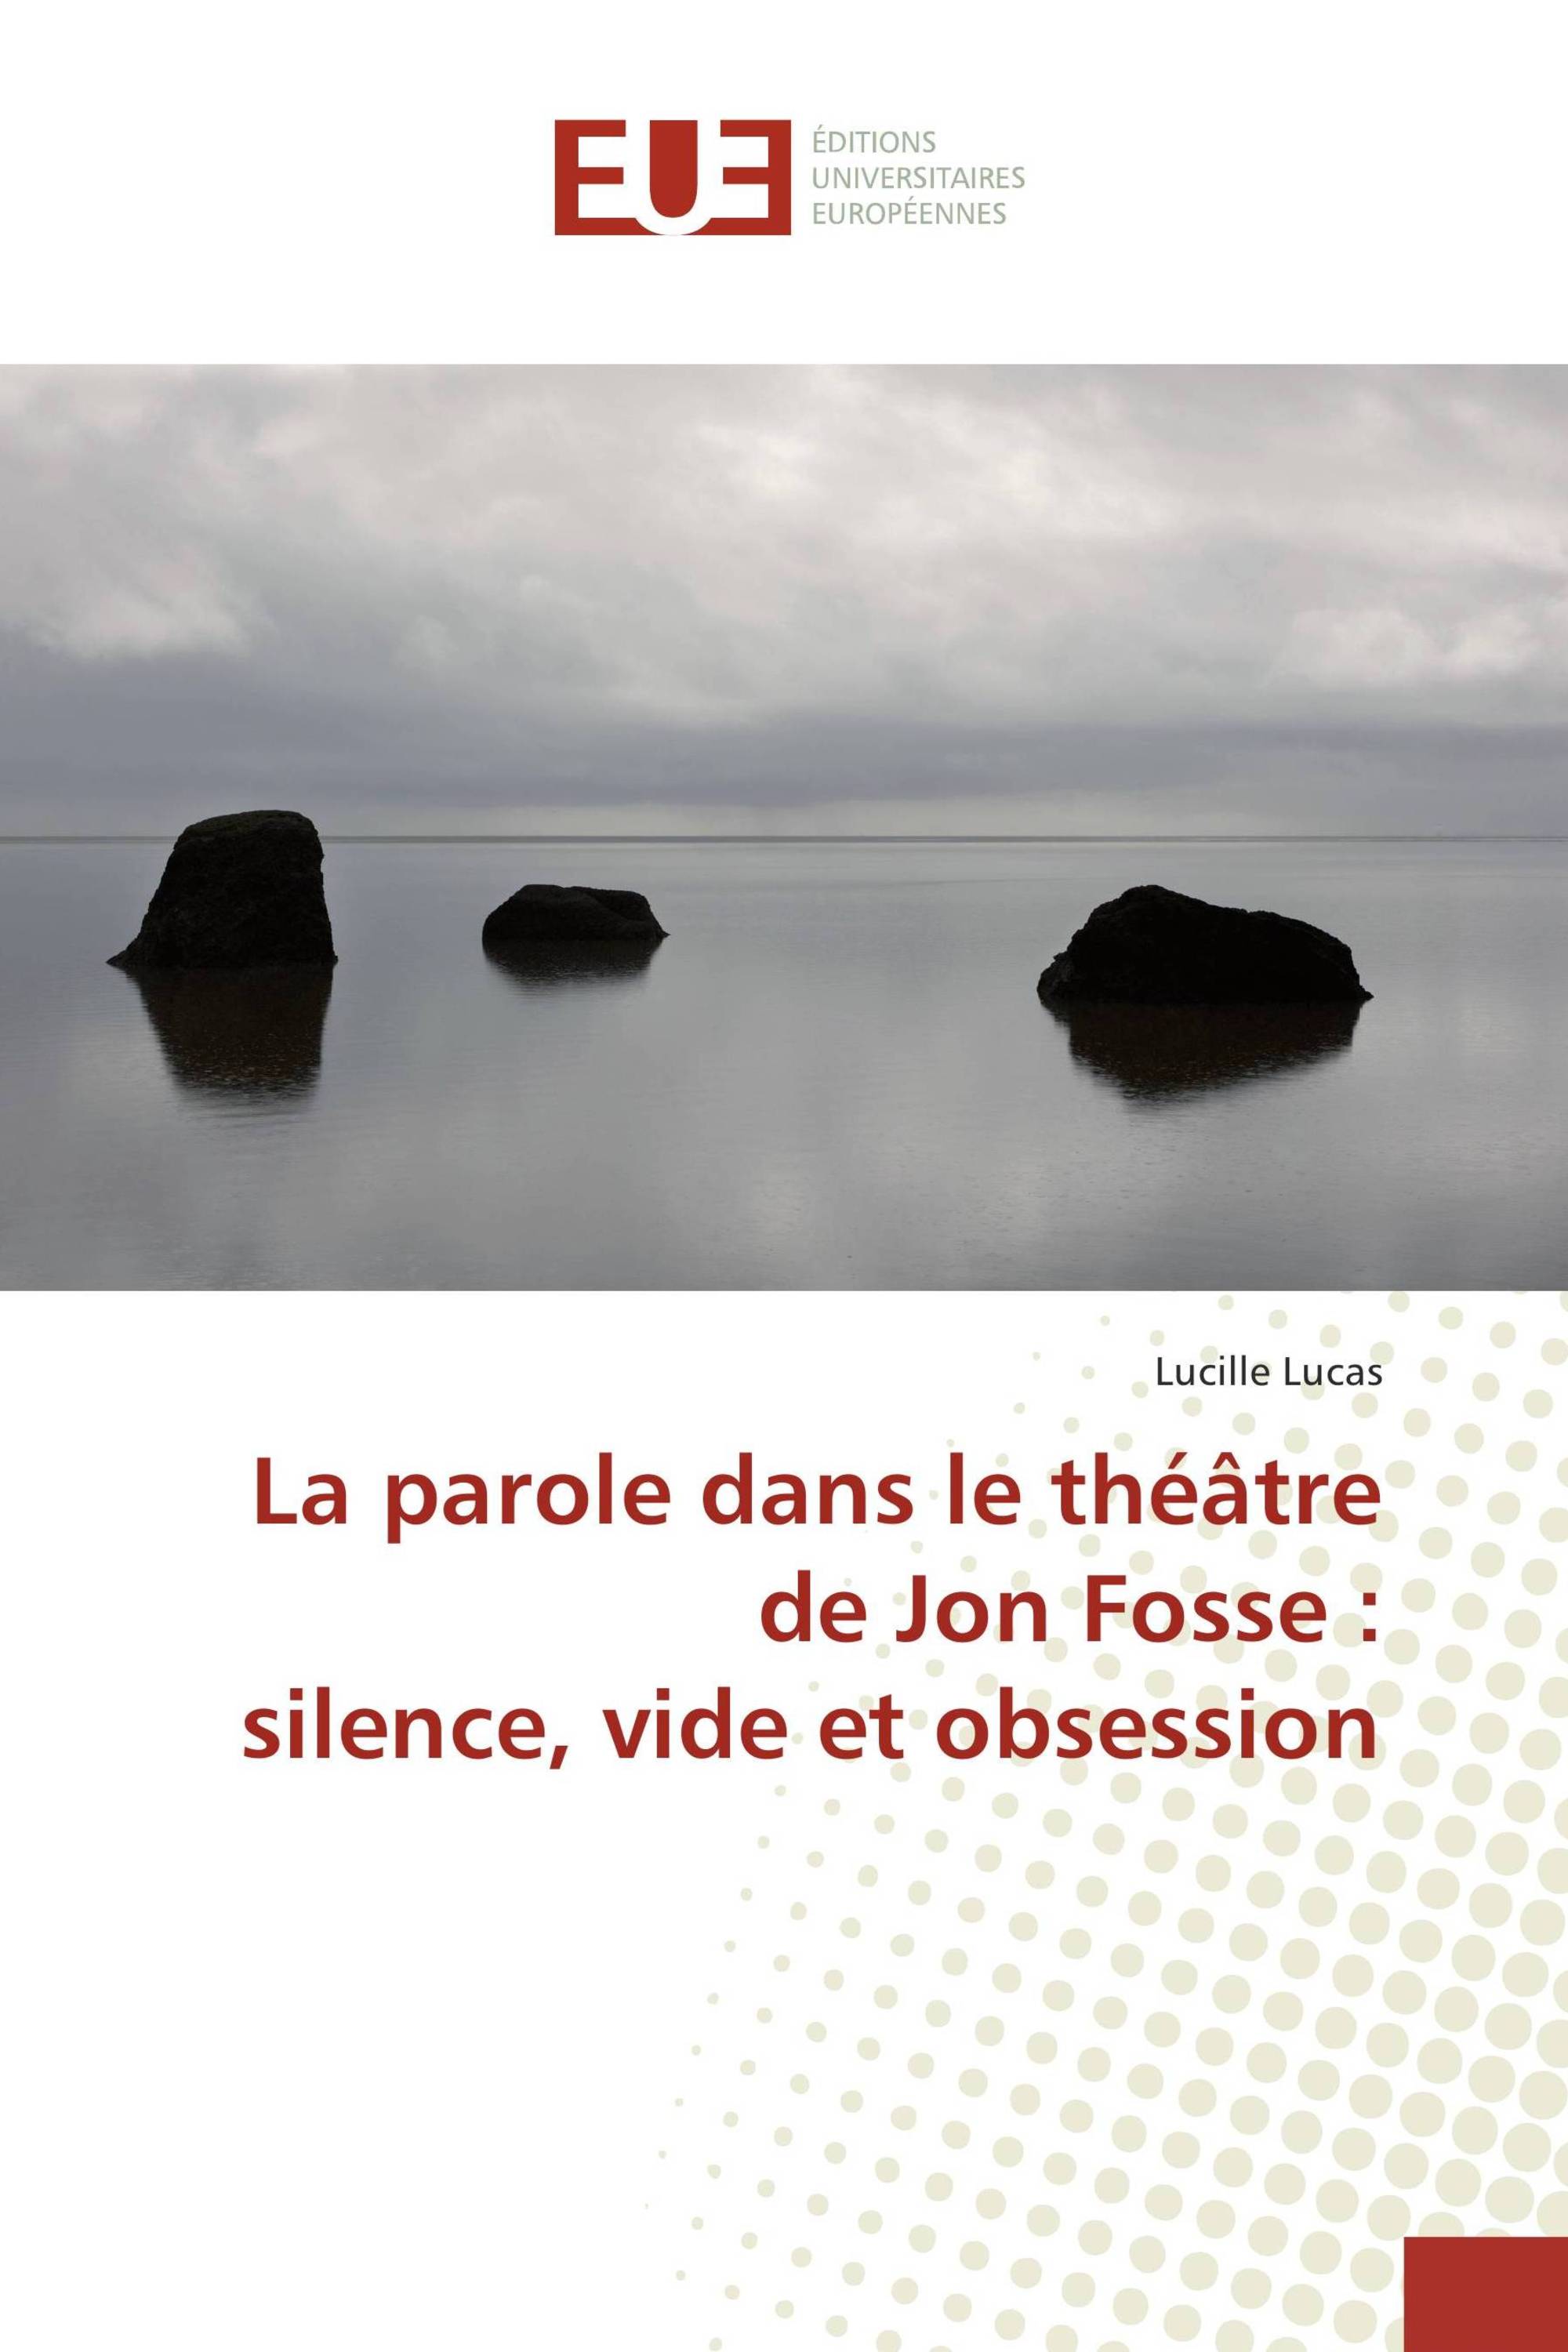 Image La parole dans le théatre de Jon Fosse : silence, vide et obsession